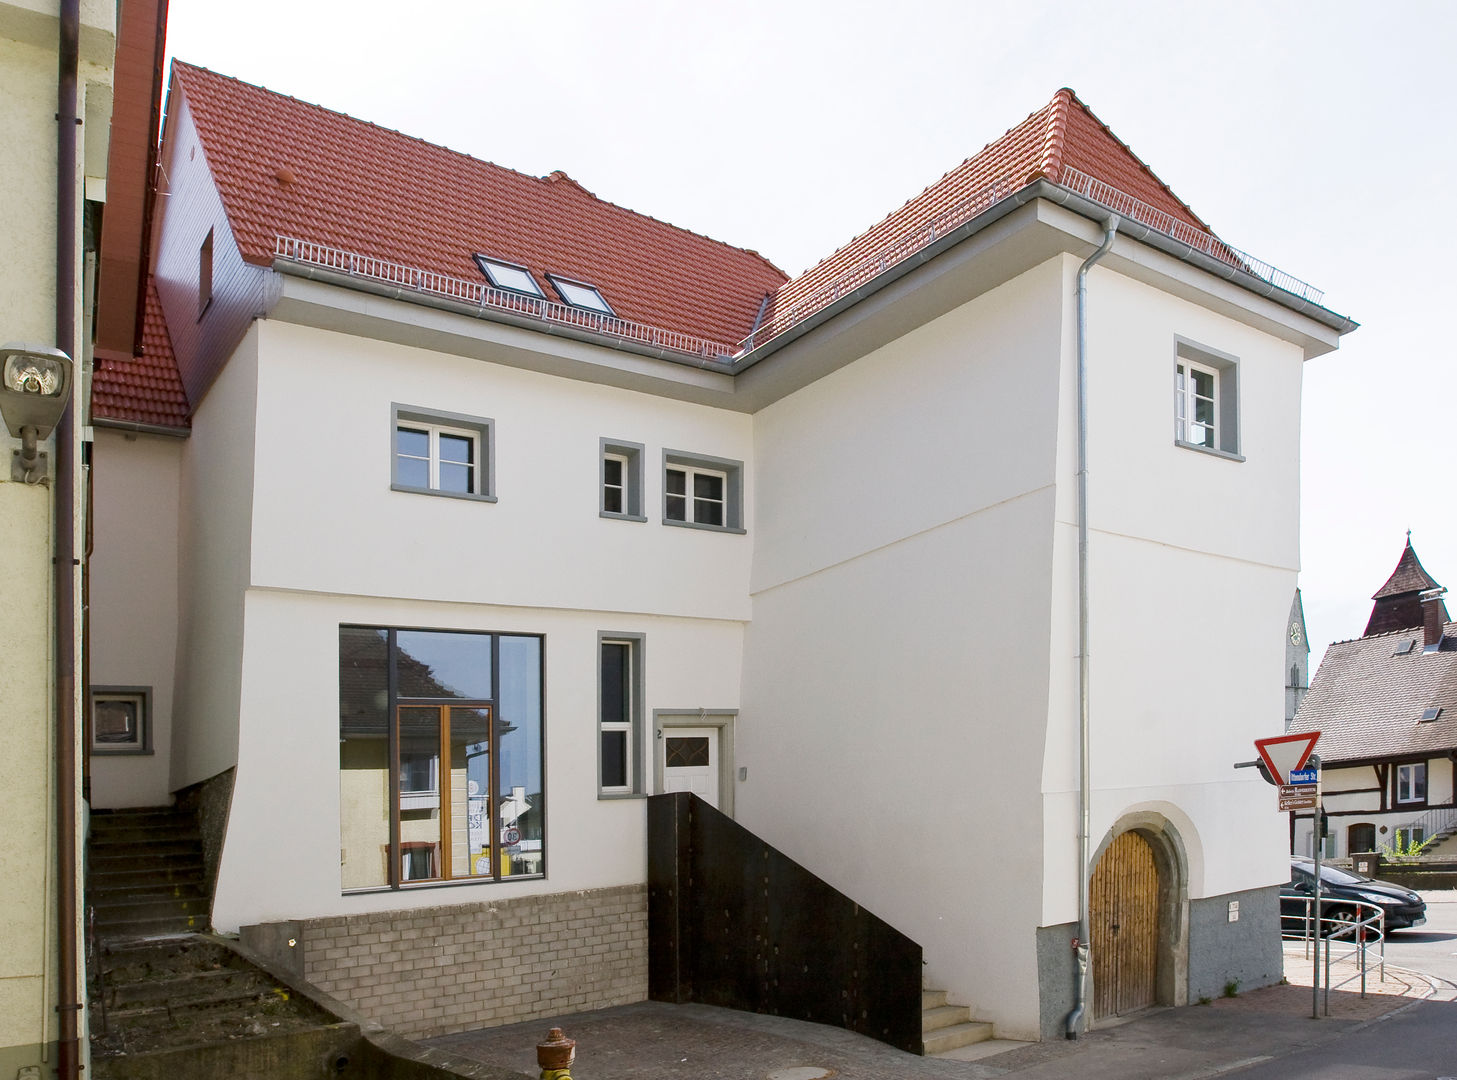 Umbau altes Bürgermeisterhaus, w3-architekten Gerhard Lallinger w3-architekten Gerhard Lallinger منازل